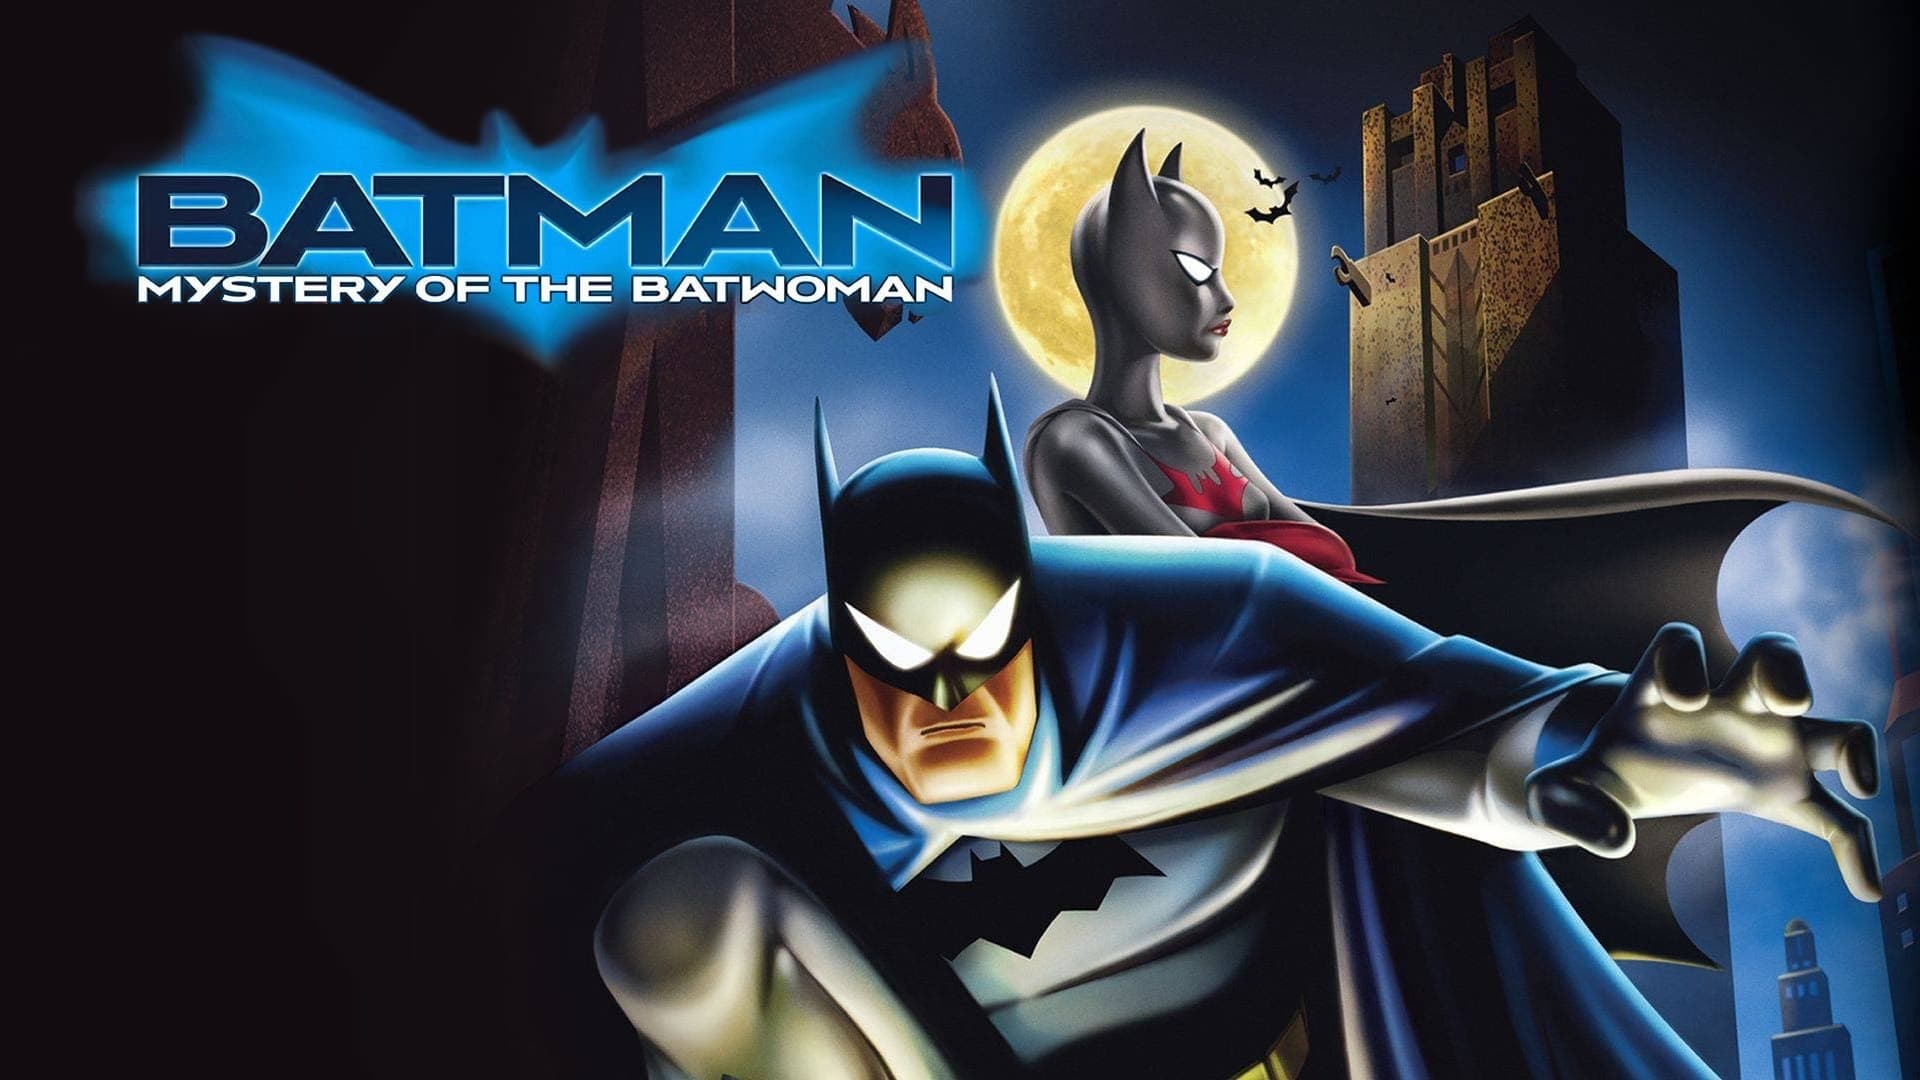 Batman - Il mistero di Batwoman (2003)